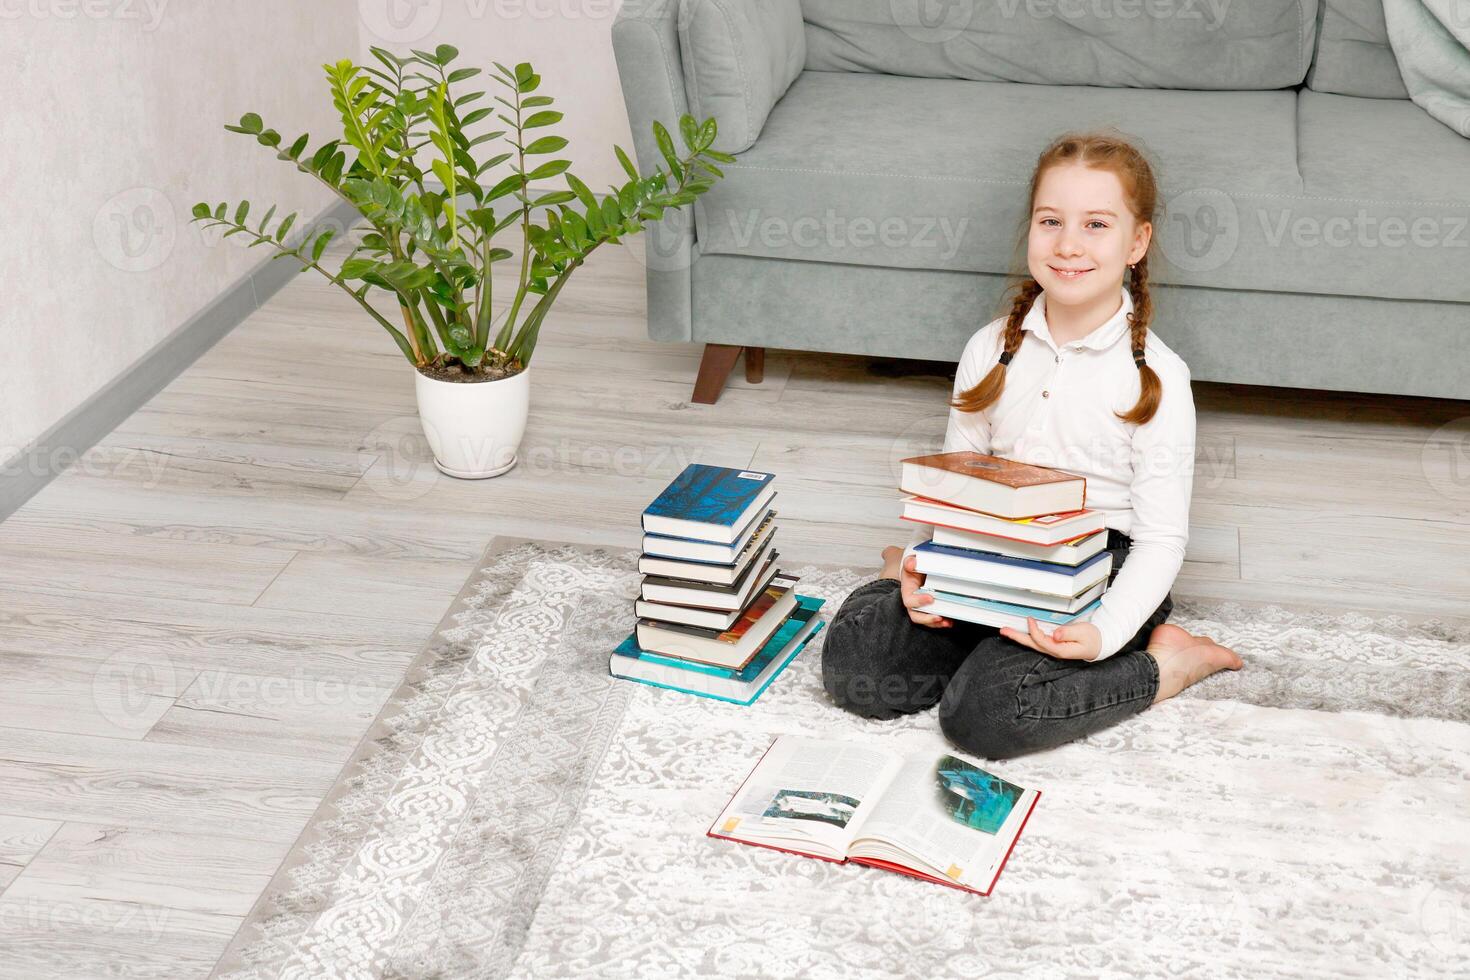 mignonne peu fille séance sur le sol à Accueil avec une empiler de livres dans sa mains photo